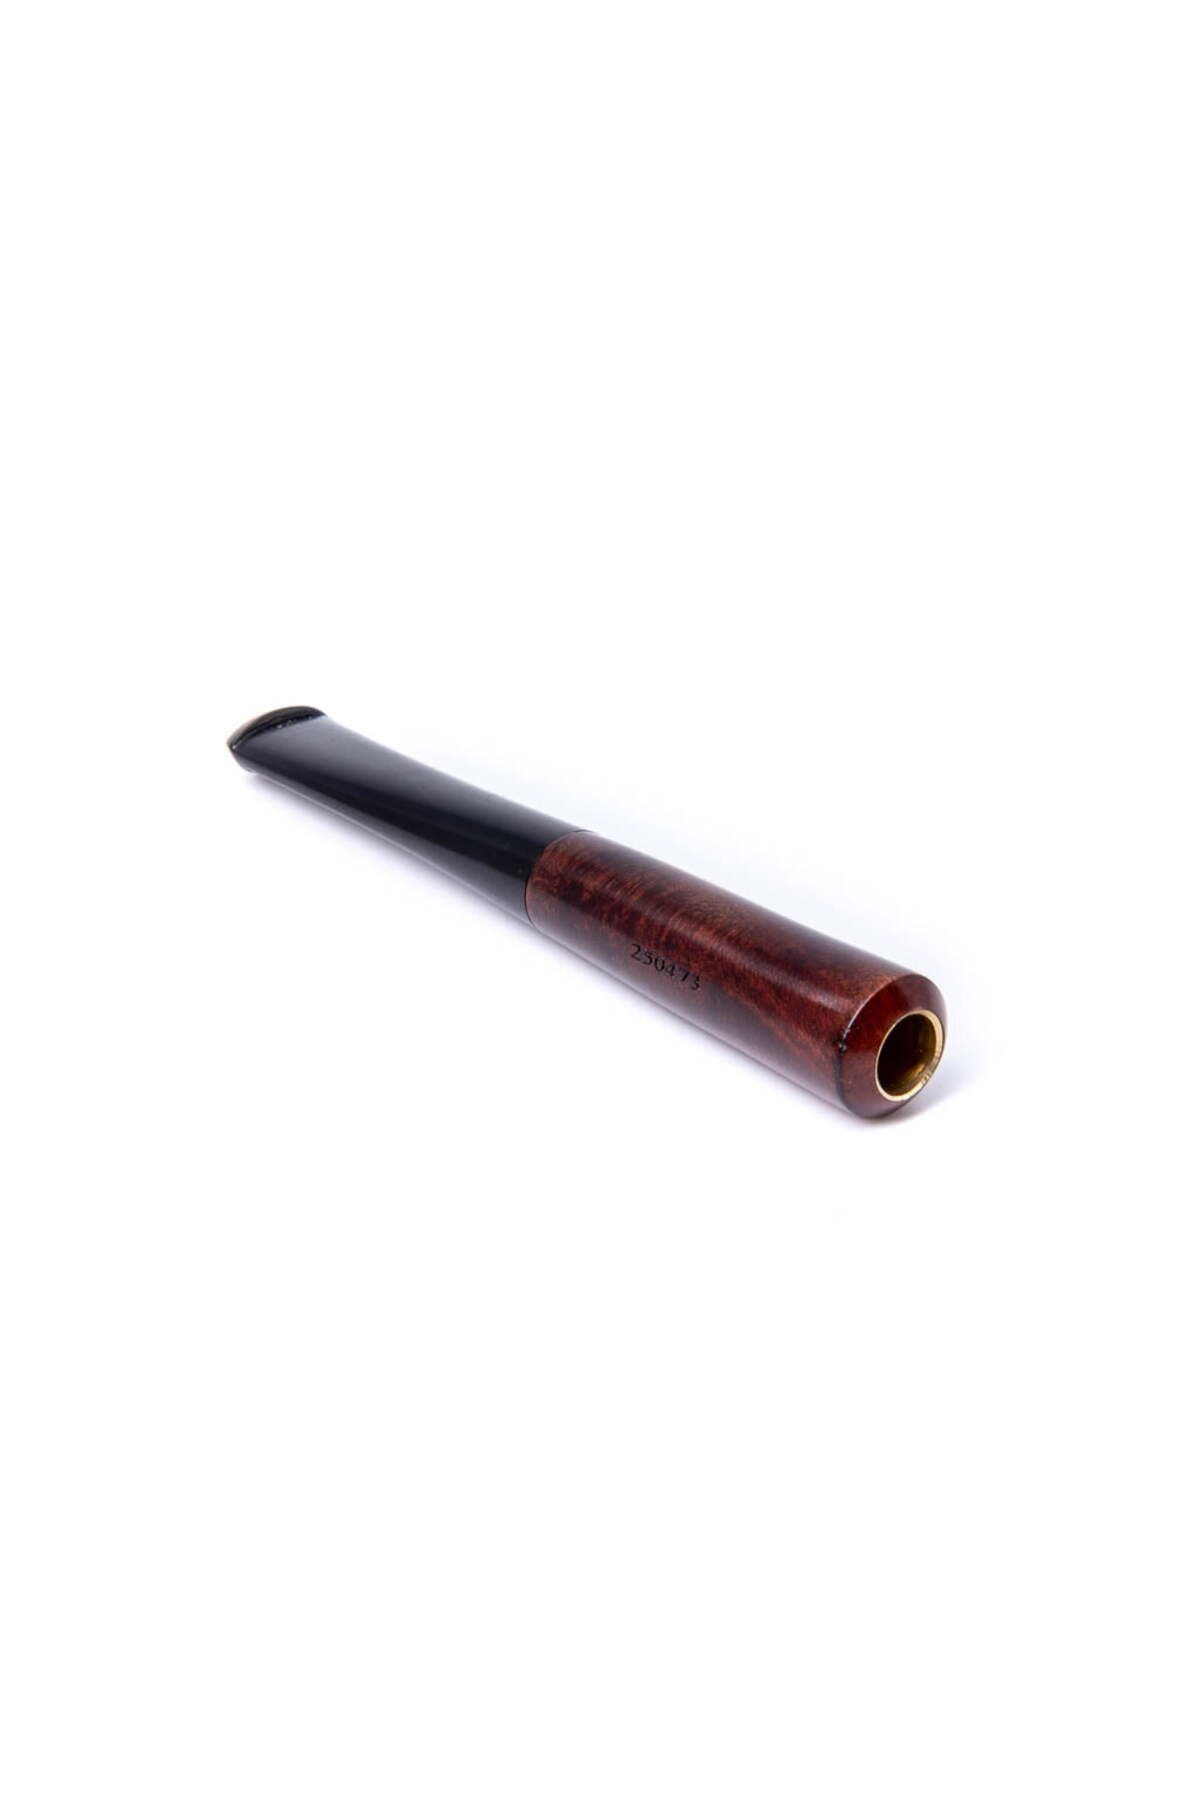 Şahin 6mm Filtreli 8mm Uçlu Ebonit Saplı Sigara Ağızlığı (250473)